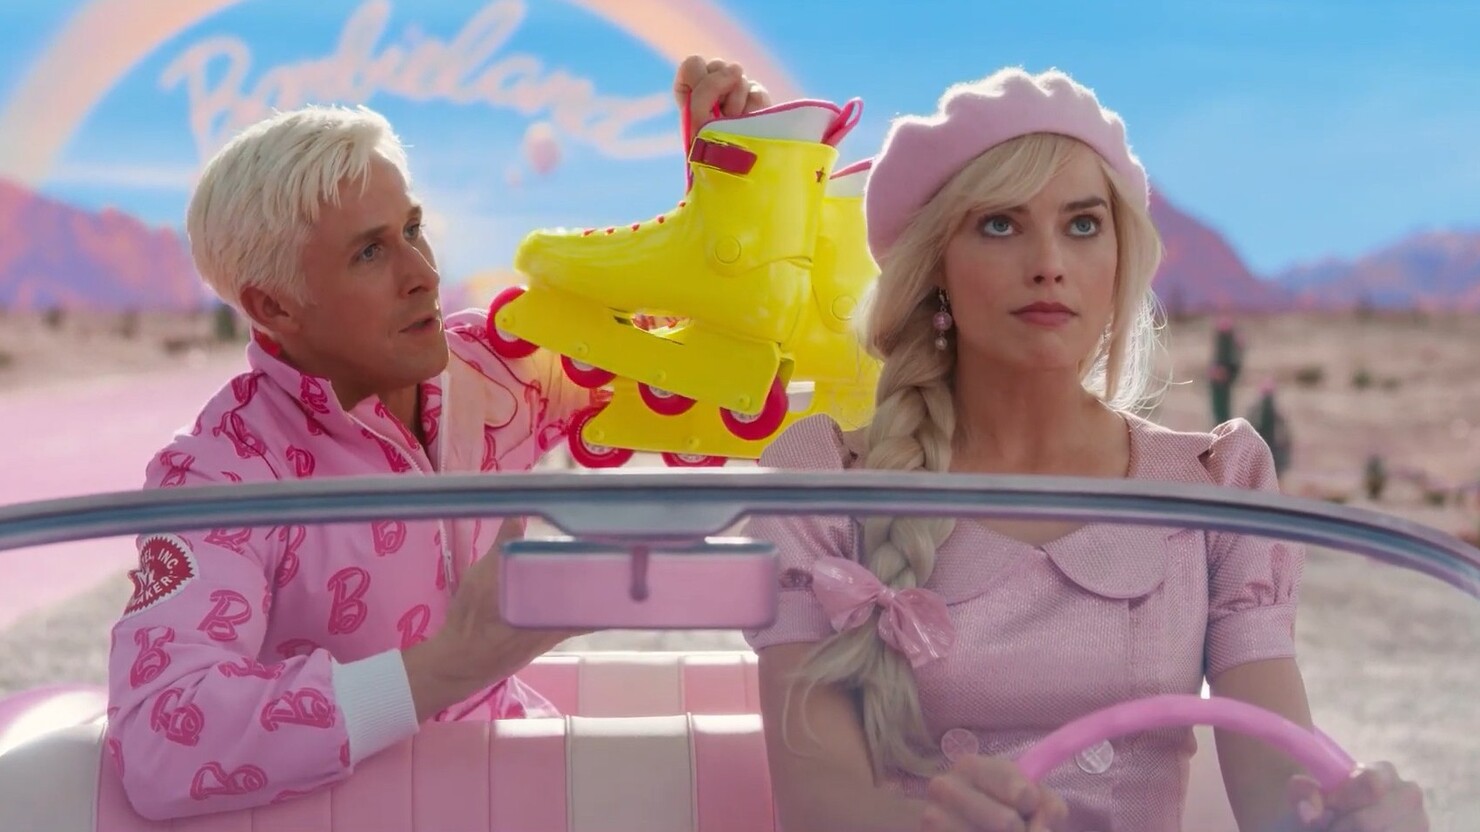 Марго Робби и Райан Гослинг отправляются в приключение в свежем тизере "Барби"